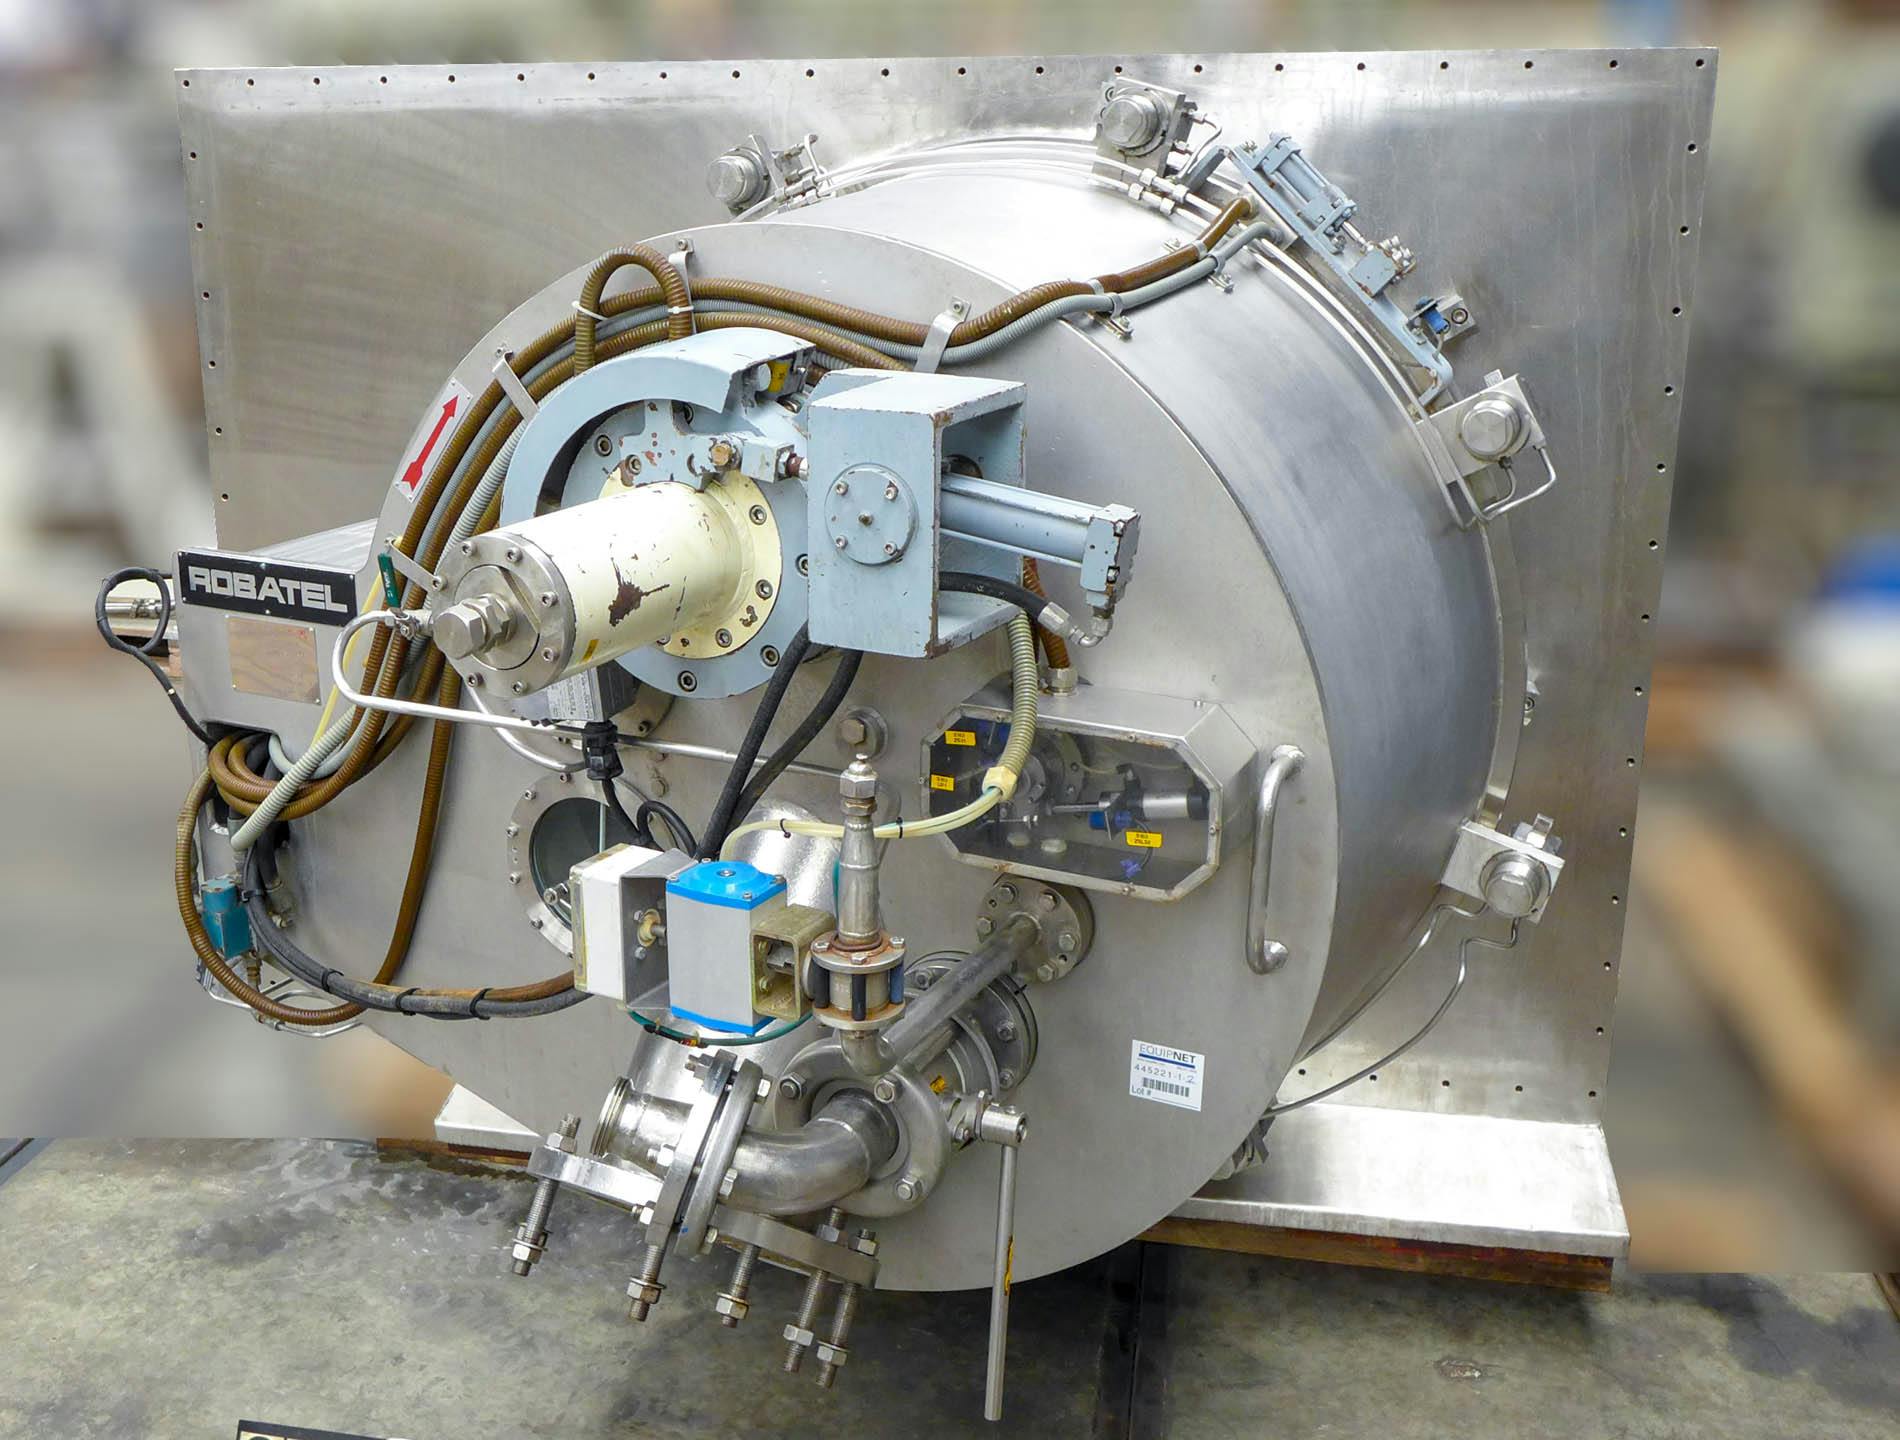 Robatel horizontal peeler centrifuge - Peeling centrifuge - image 3